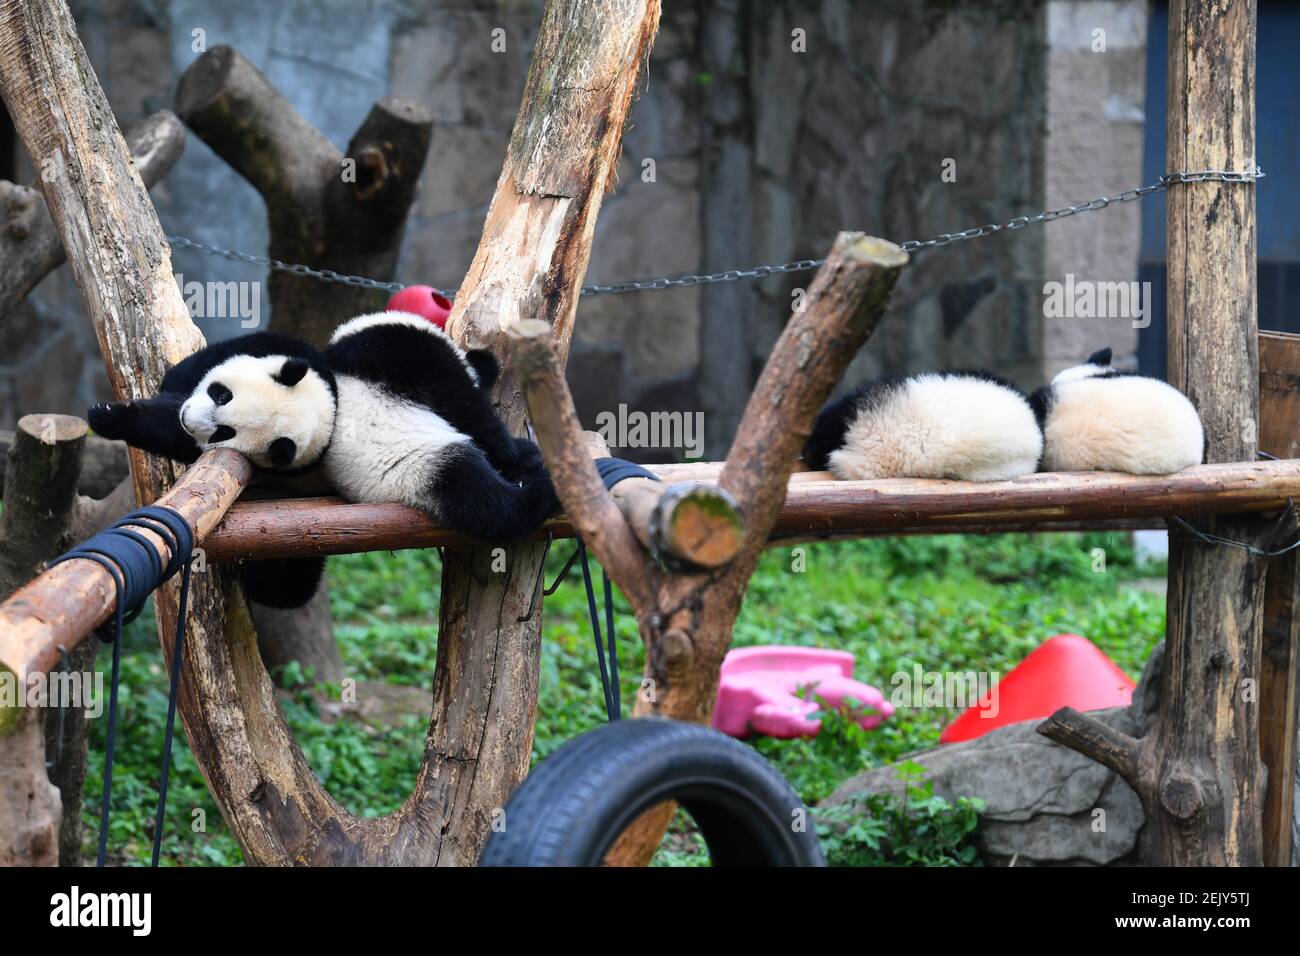 Giant panda quadruplets Shuangshuang, Chongchong, Xixi and Qingqing enjoy  their cozy life at Chongqing zoo while tourists visit them during the  Qingming Festival vacation, Chongqing, China, 4 April 2020 Stock Photo -  Alamy